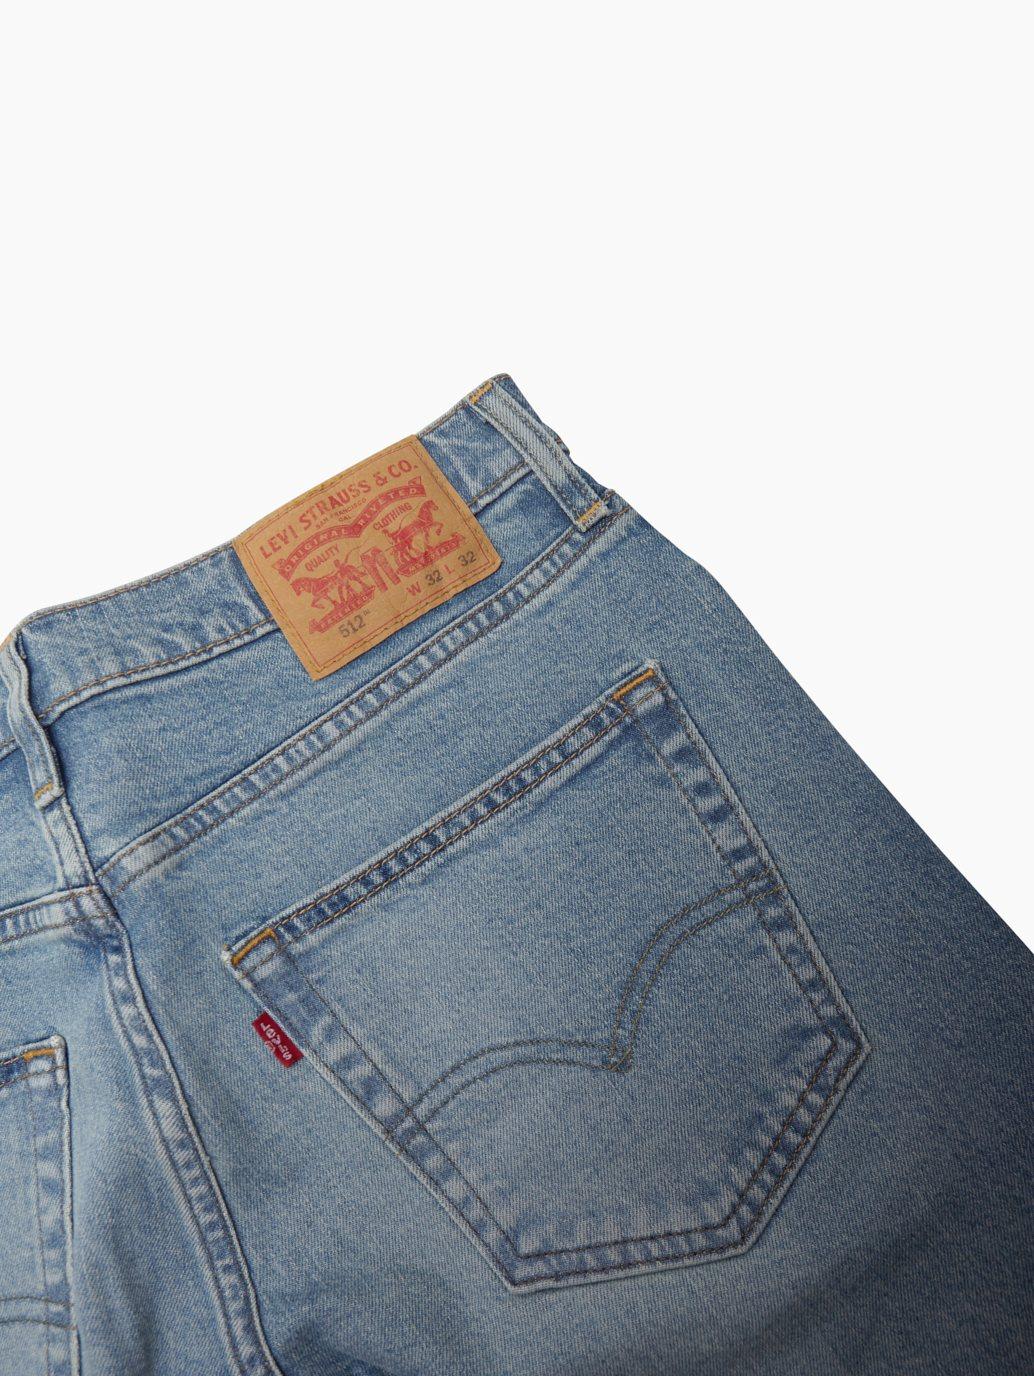 levis singapore mens 512 slim taper jeans 288330956 18 Details